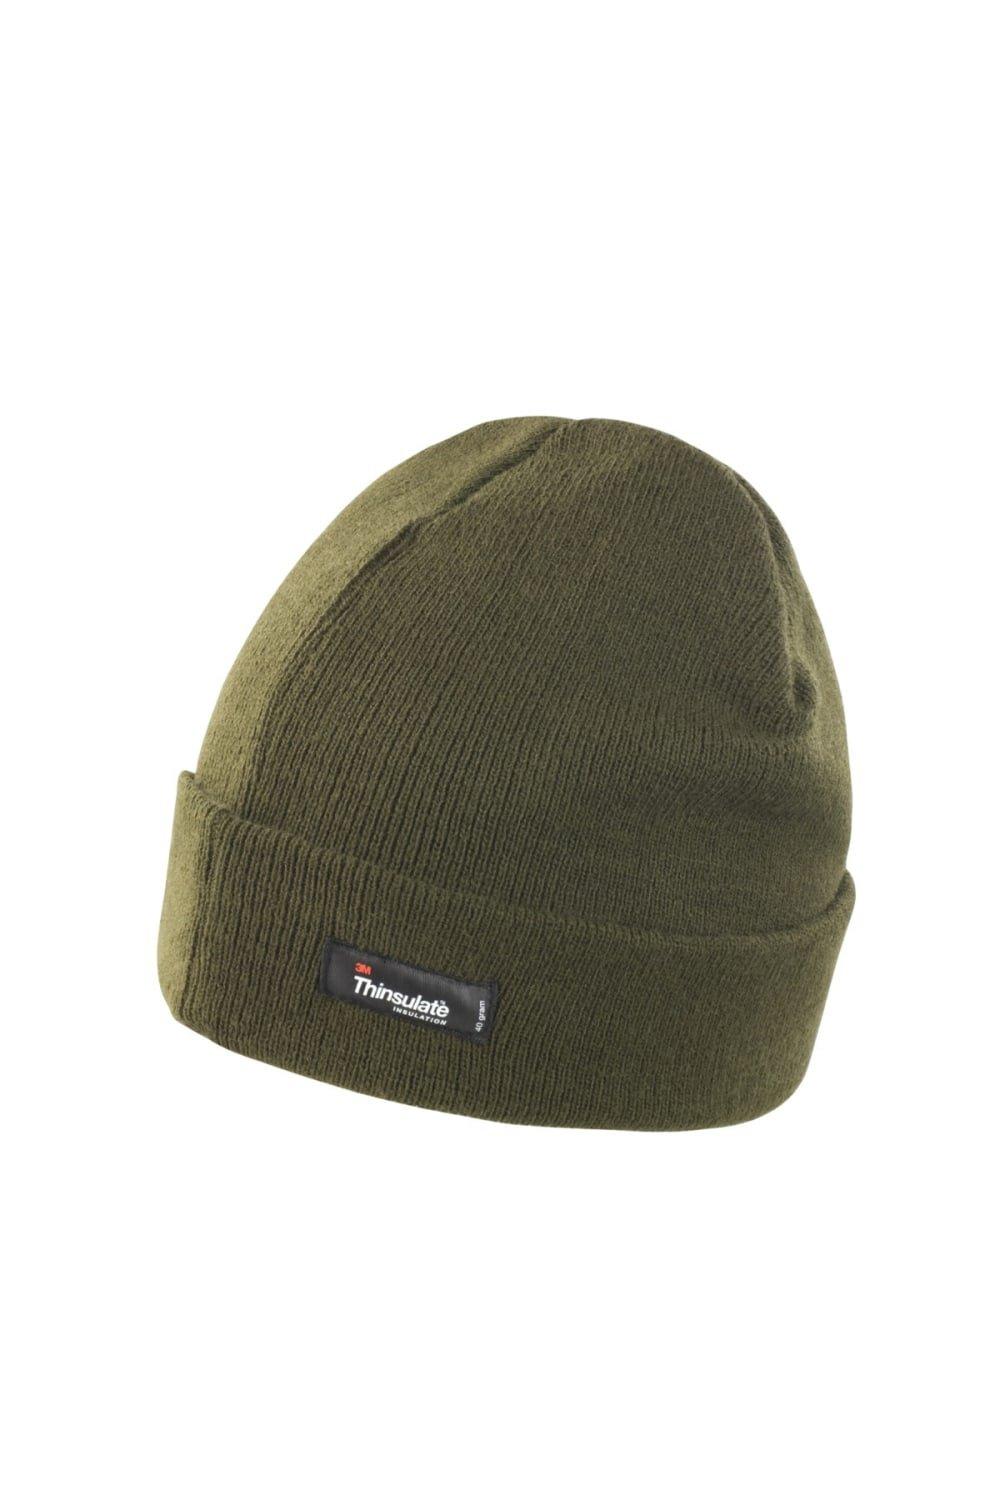 Легкая термозимняя шапка Thinsulate (3M, 40 г) Result, зеленый фото